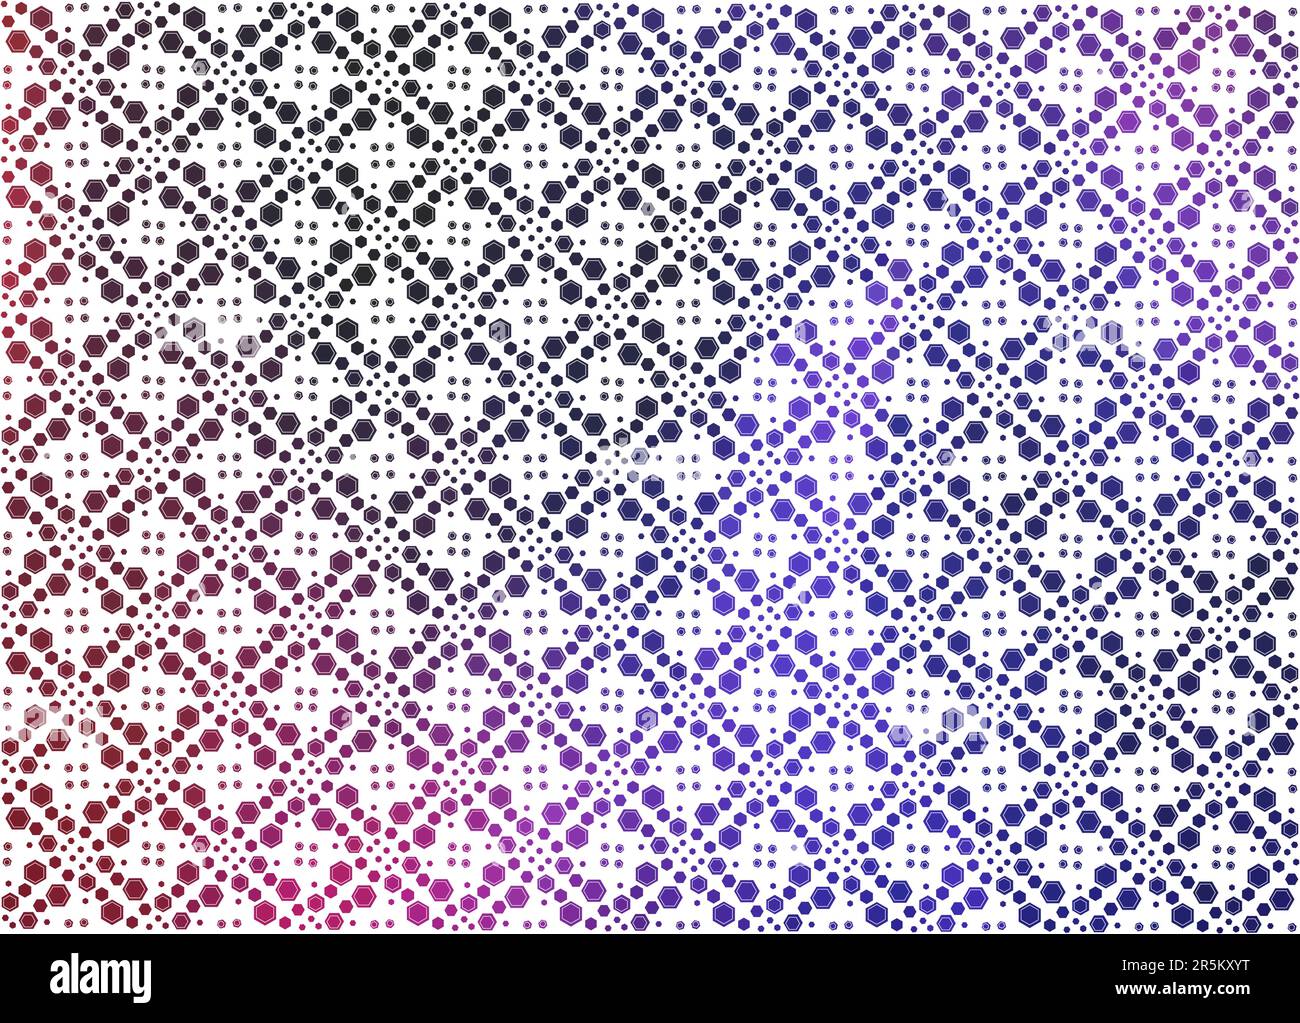 Hintergrund des sechseckigen Musters. Muster der gefärbten Sechsecke Stock Vektor